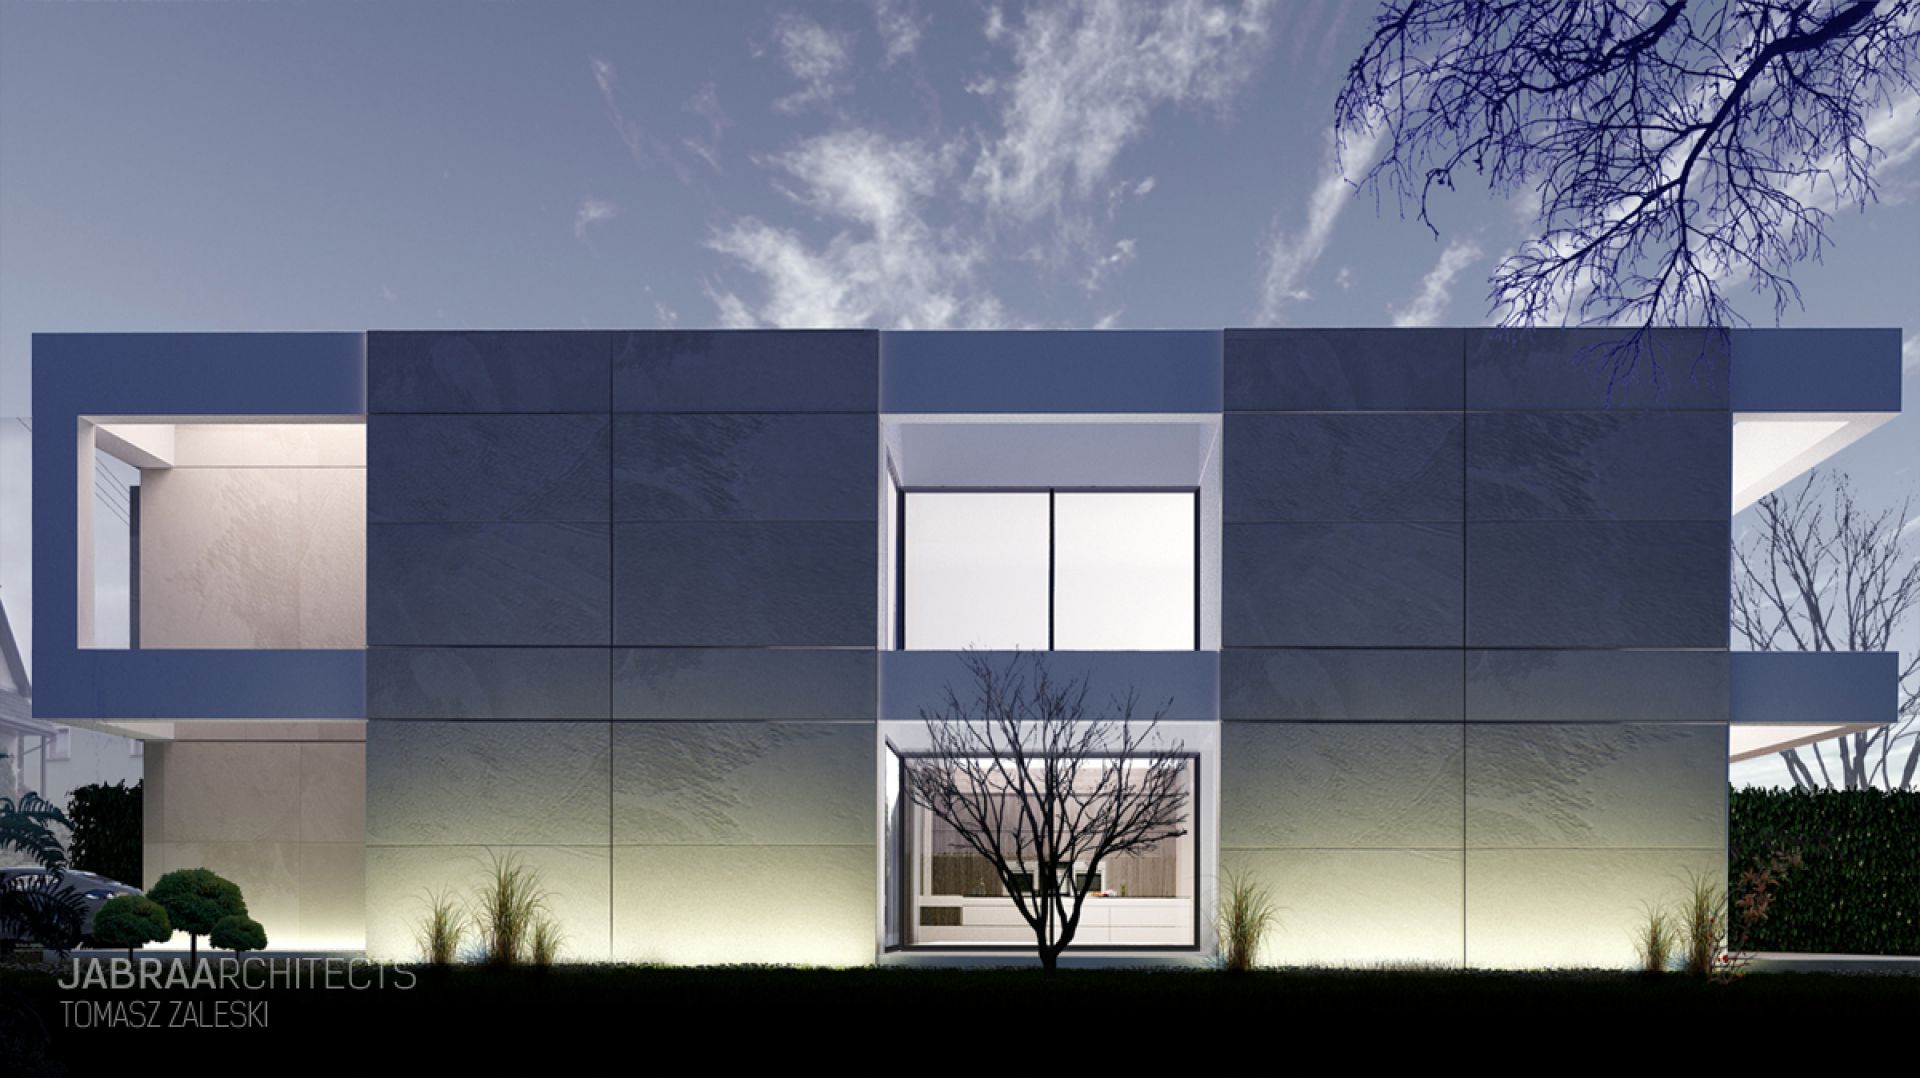 Architektura budynku to oszczędna, minimalistyczna kompozycja prostopadłościanów. Fot. JABRAARCHITECTS 